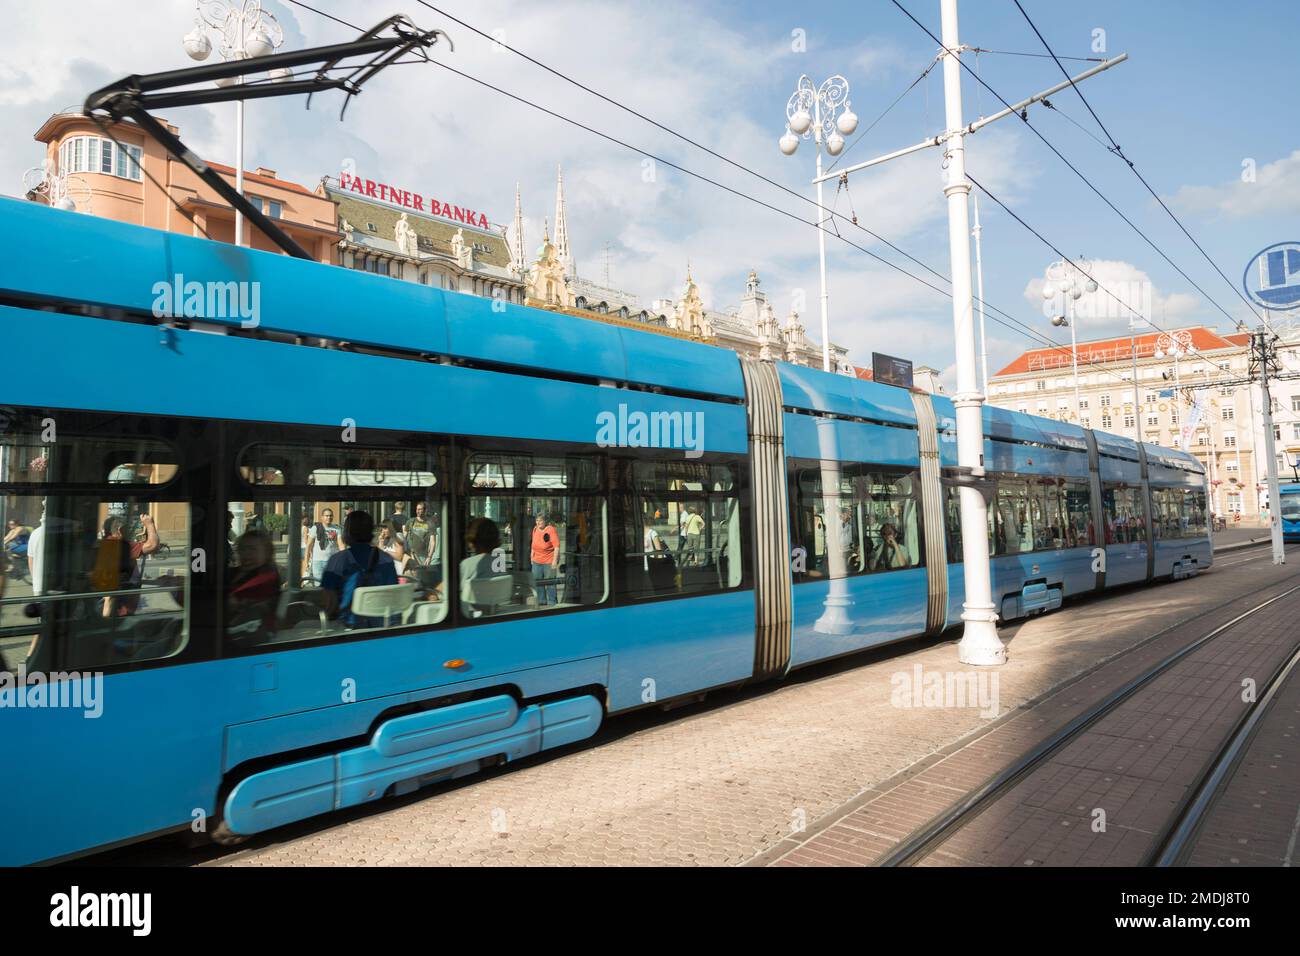 Croazia, Zagabria, la piazza principale - Trg Josip Jelacica - con tram blu unbiqutous strada. Foto Stock